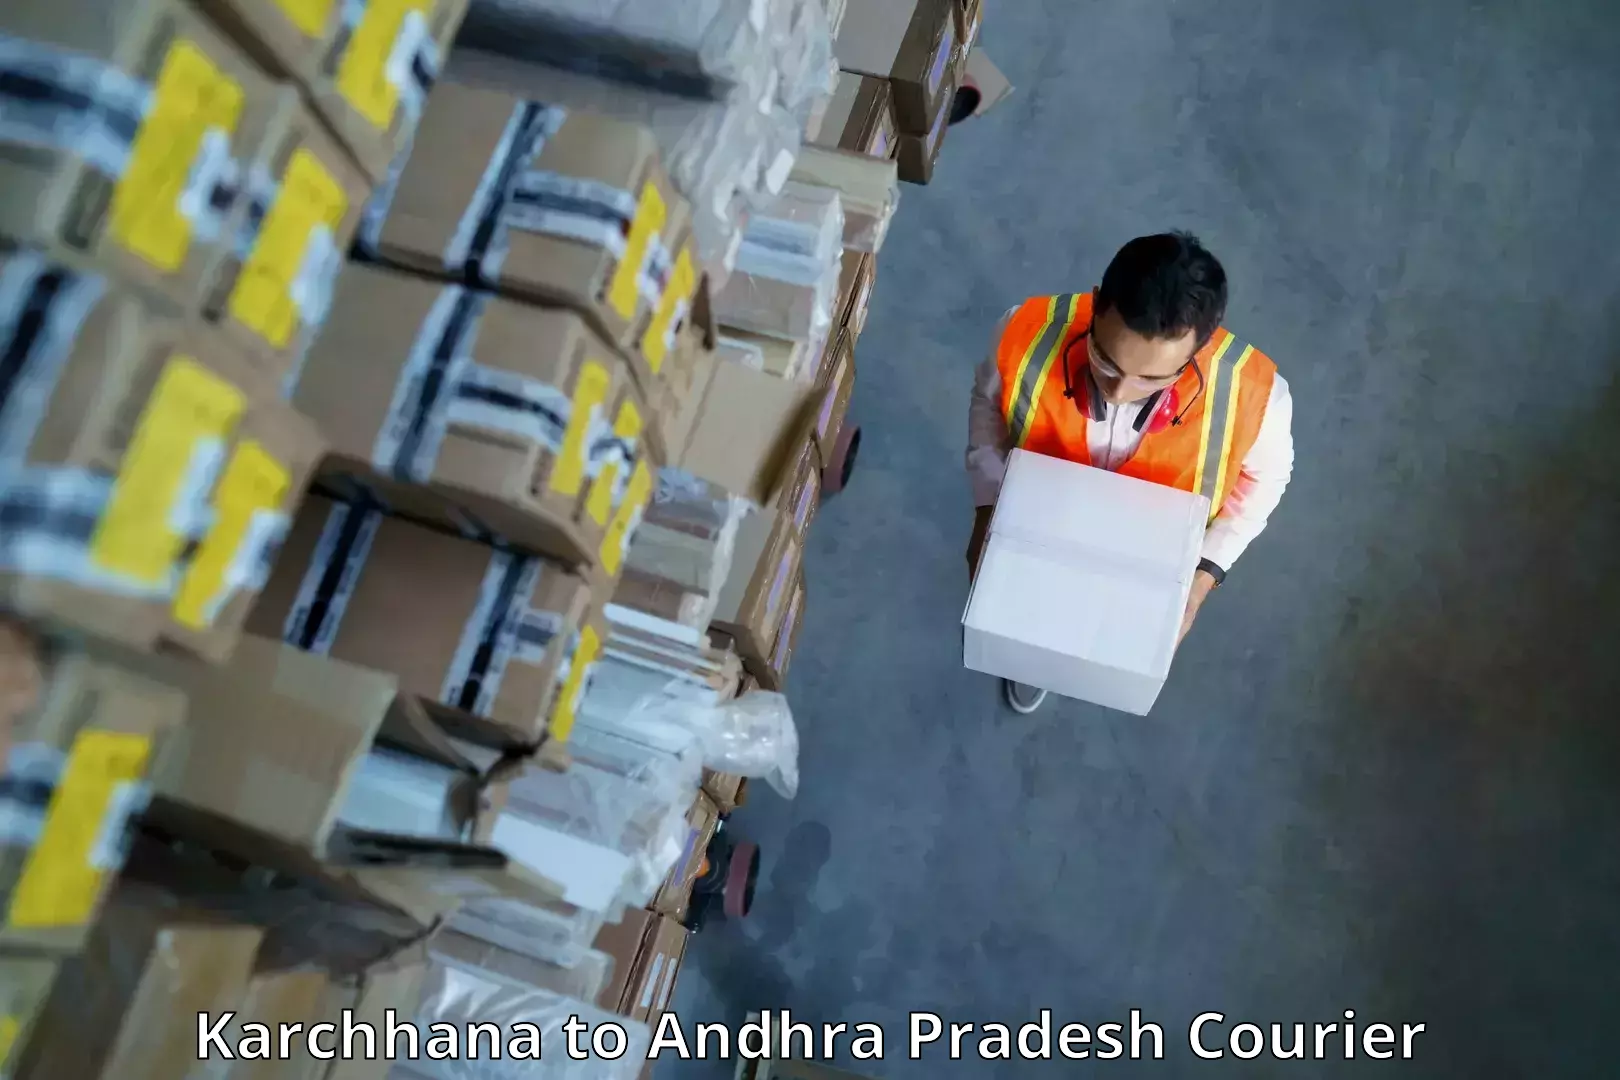 Nationwide shipping capabilities Karchhana to Mudigubba